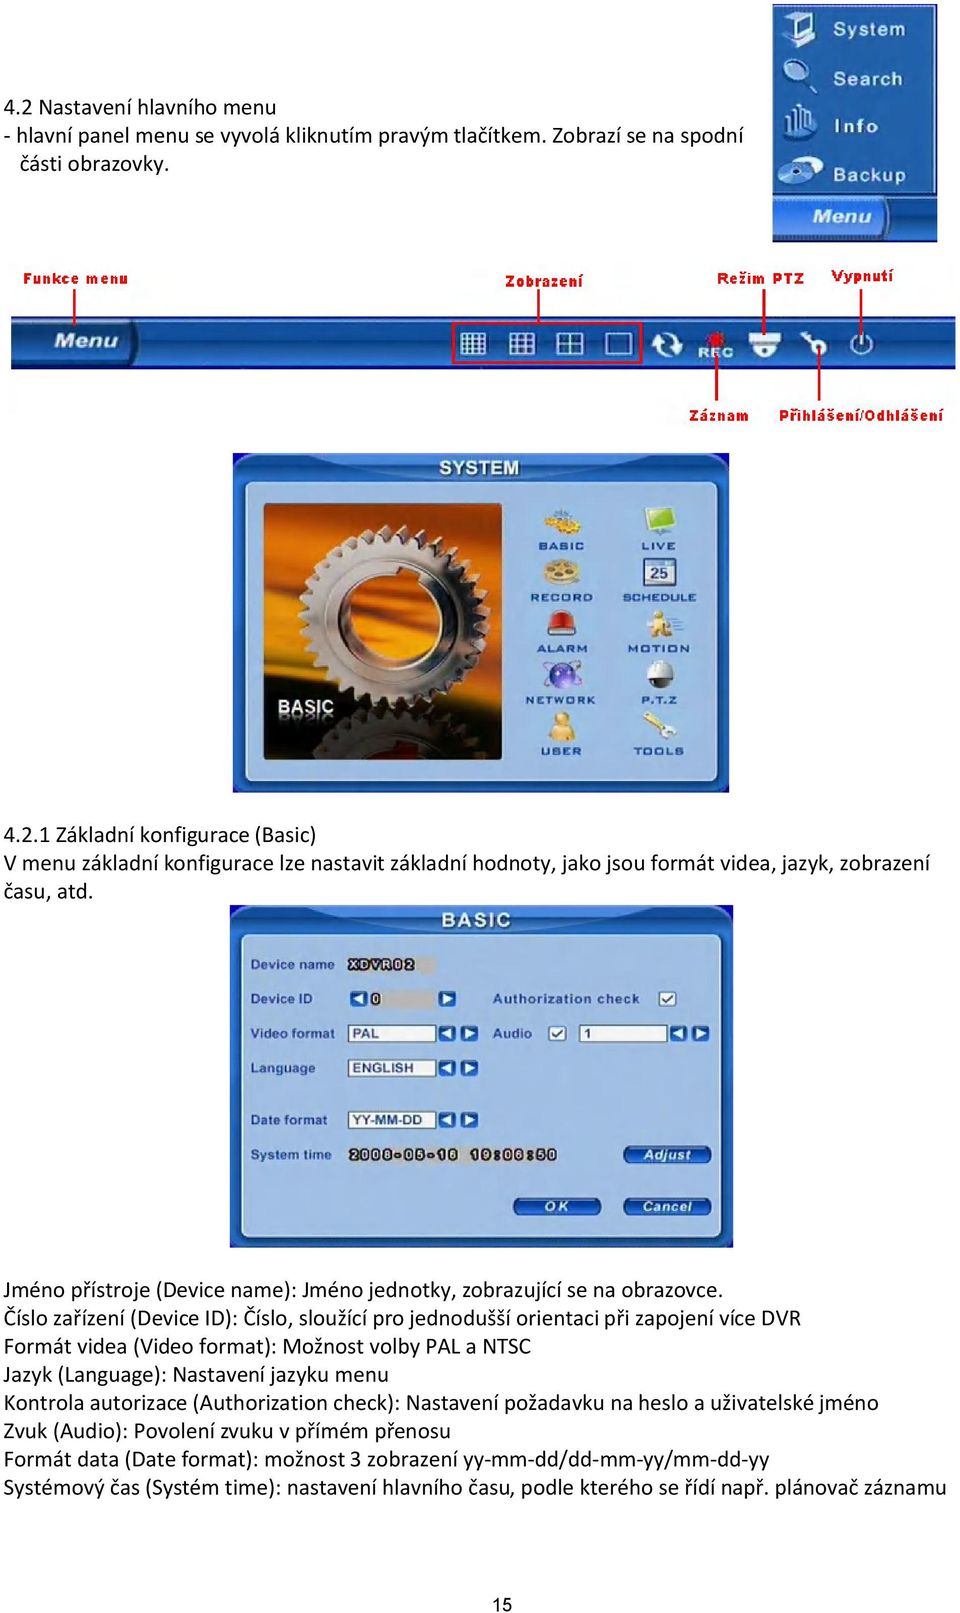 Číslo zařízení (Device ID): Číslo, sloužící pro jednodušší orientaci při zapojení více DVR Formát videa (Video format): Možnost volby PAL a NTSC Jazyk (Language): Nastavení jazyku menu Kontrola